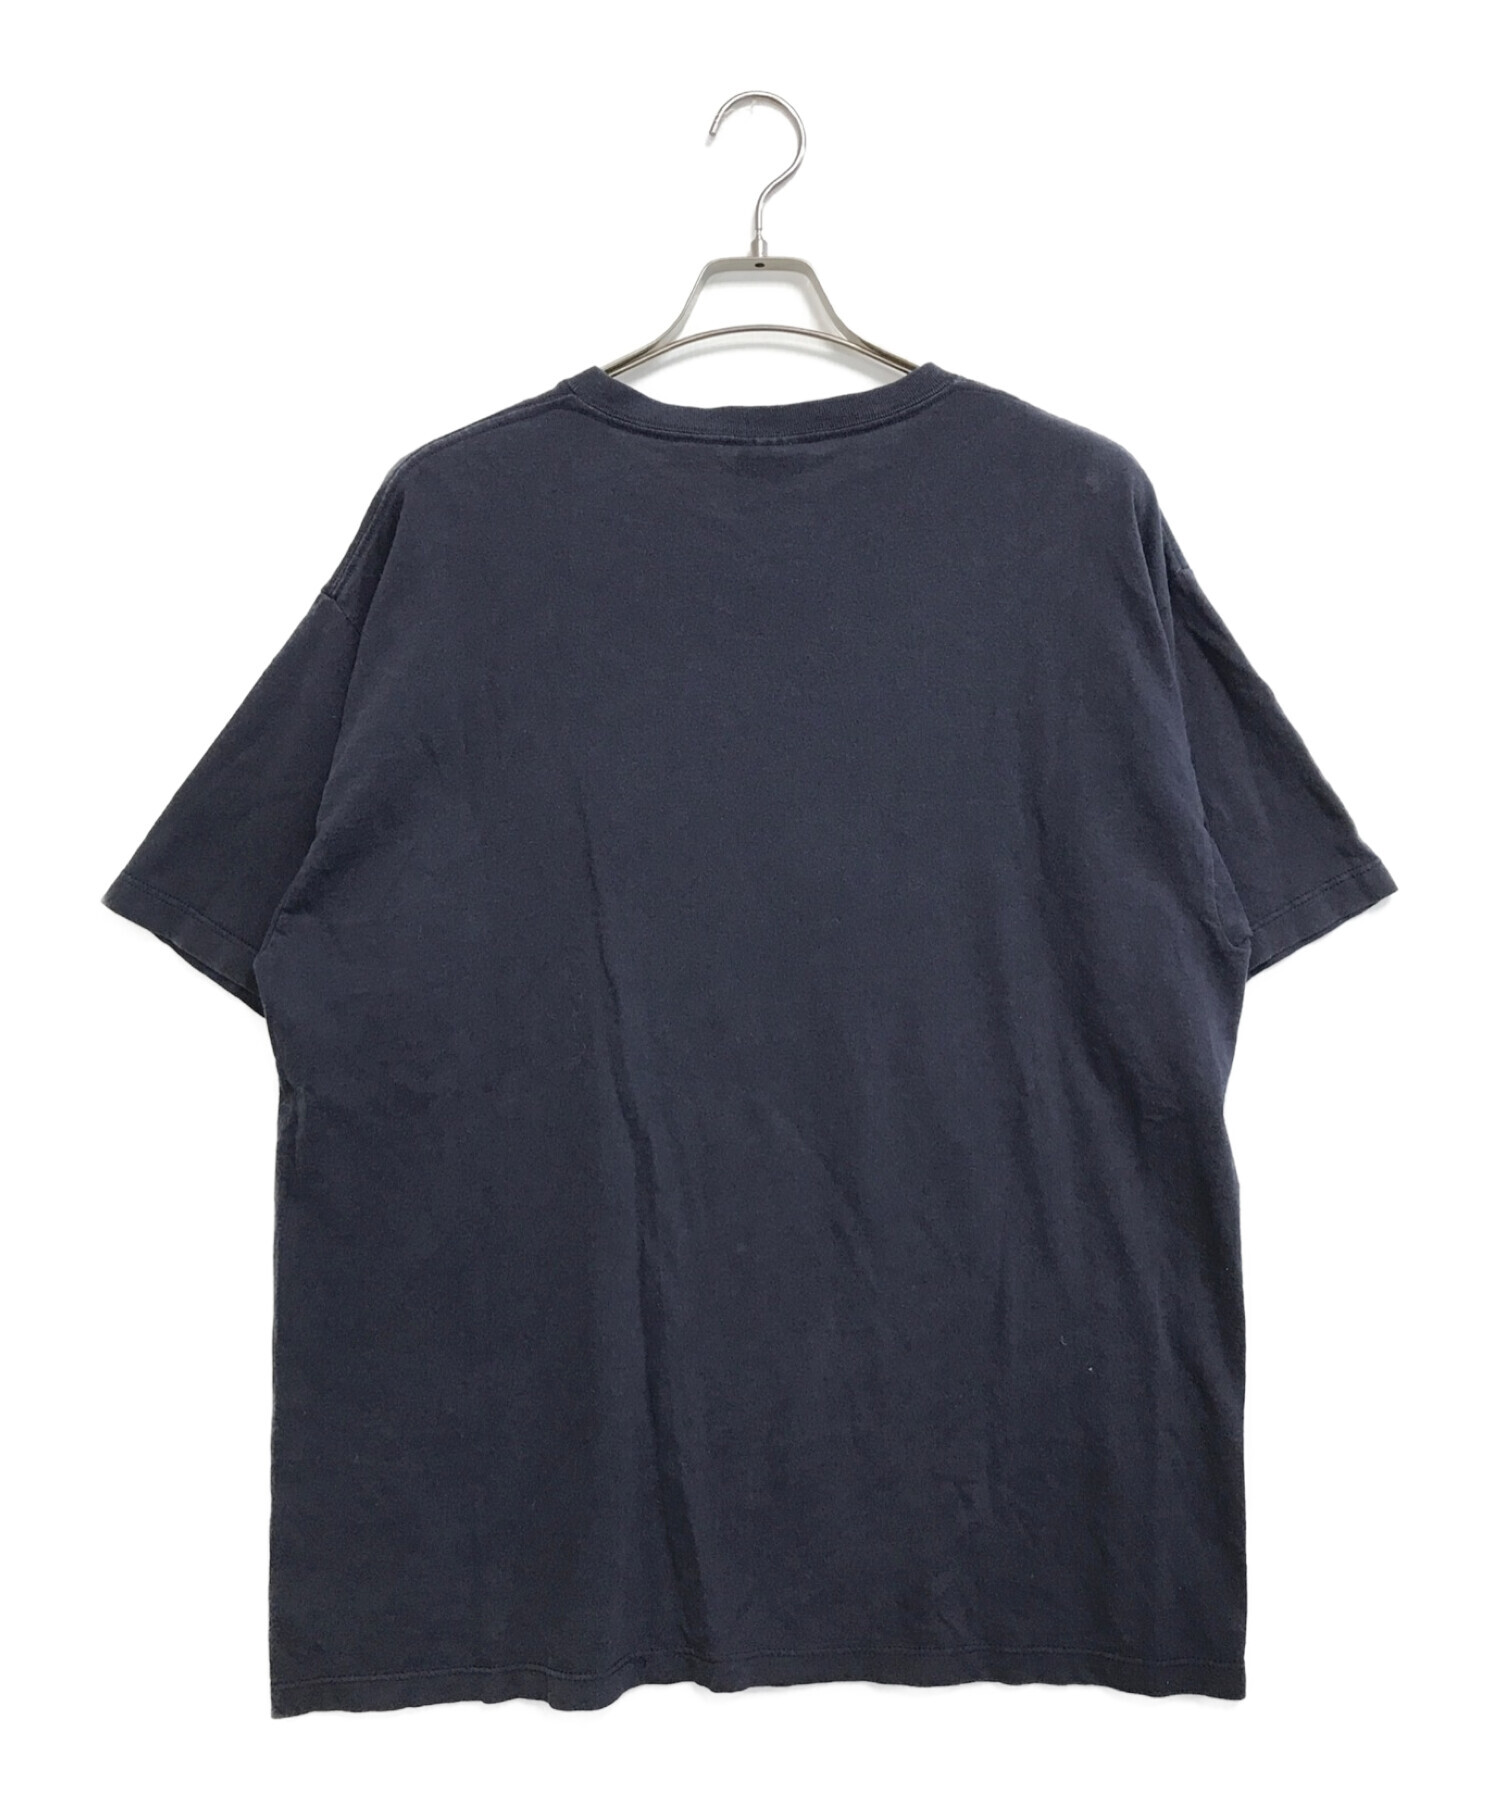 バンドTシャツ (バンドTシャツ) [古着]90s The Prodigy Tシャツ ネイビー サイズ:XL